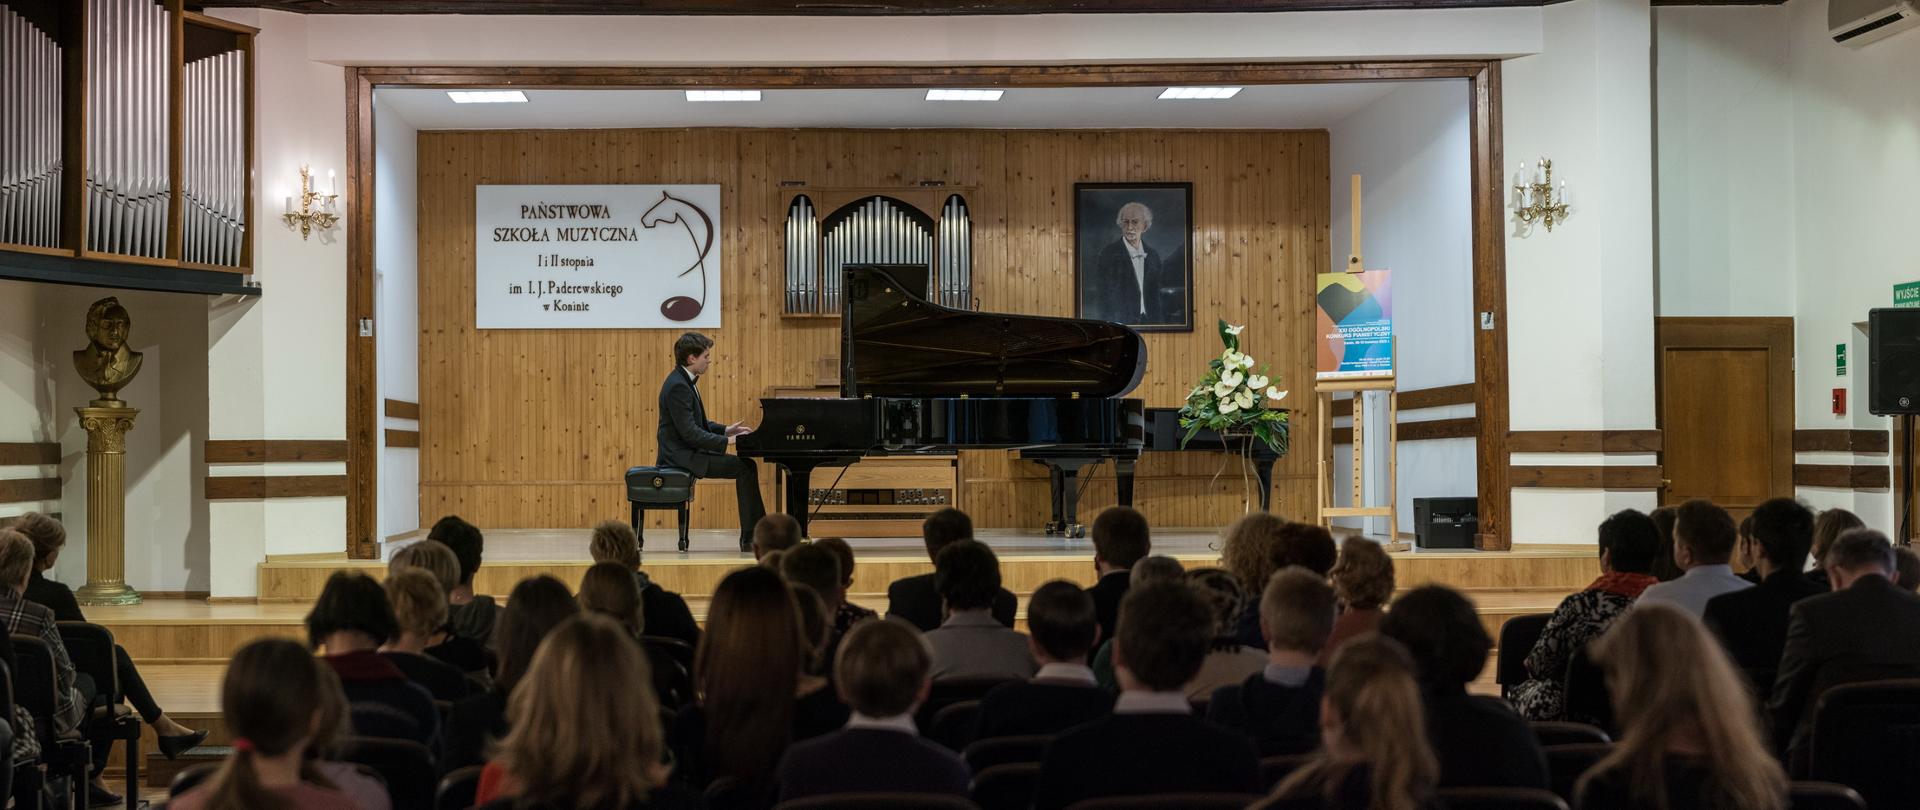 Zdjęcie sali koncertowej PSM w Koninie, pianista siedzi przy fortepianie, na widowni publiczność, na scenie białe kwiaty i plakat konkursu pianistycznego. W tle logo szkoły i portret I. J. Paderewskiego, na ścianie prospekt organów